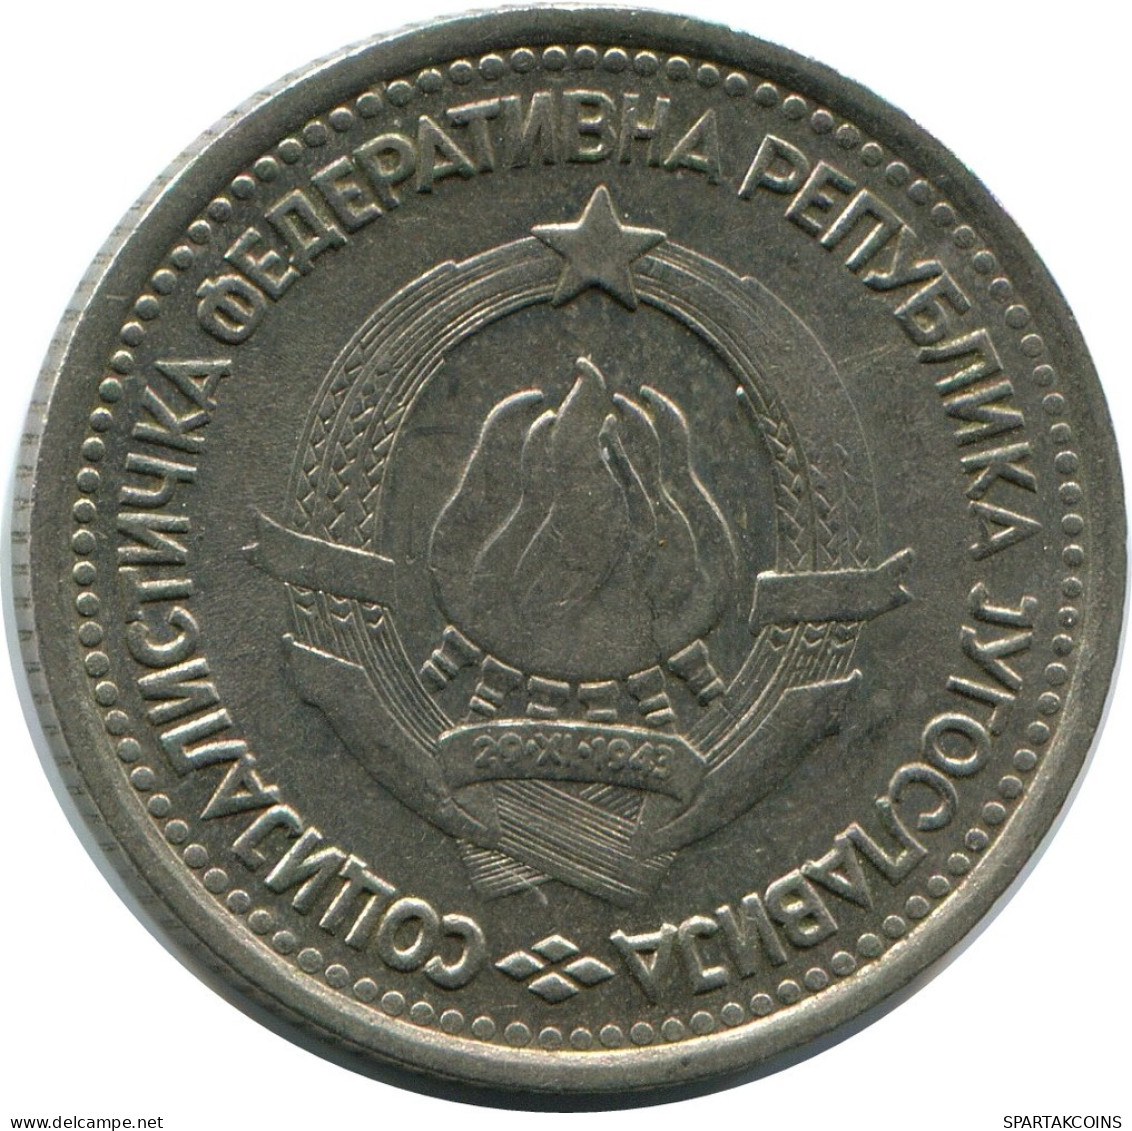 1 DINAR 1965 YUGOSLAVIA Coin #AZ589.U.A - Yugoslavia